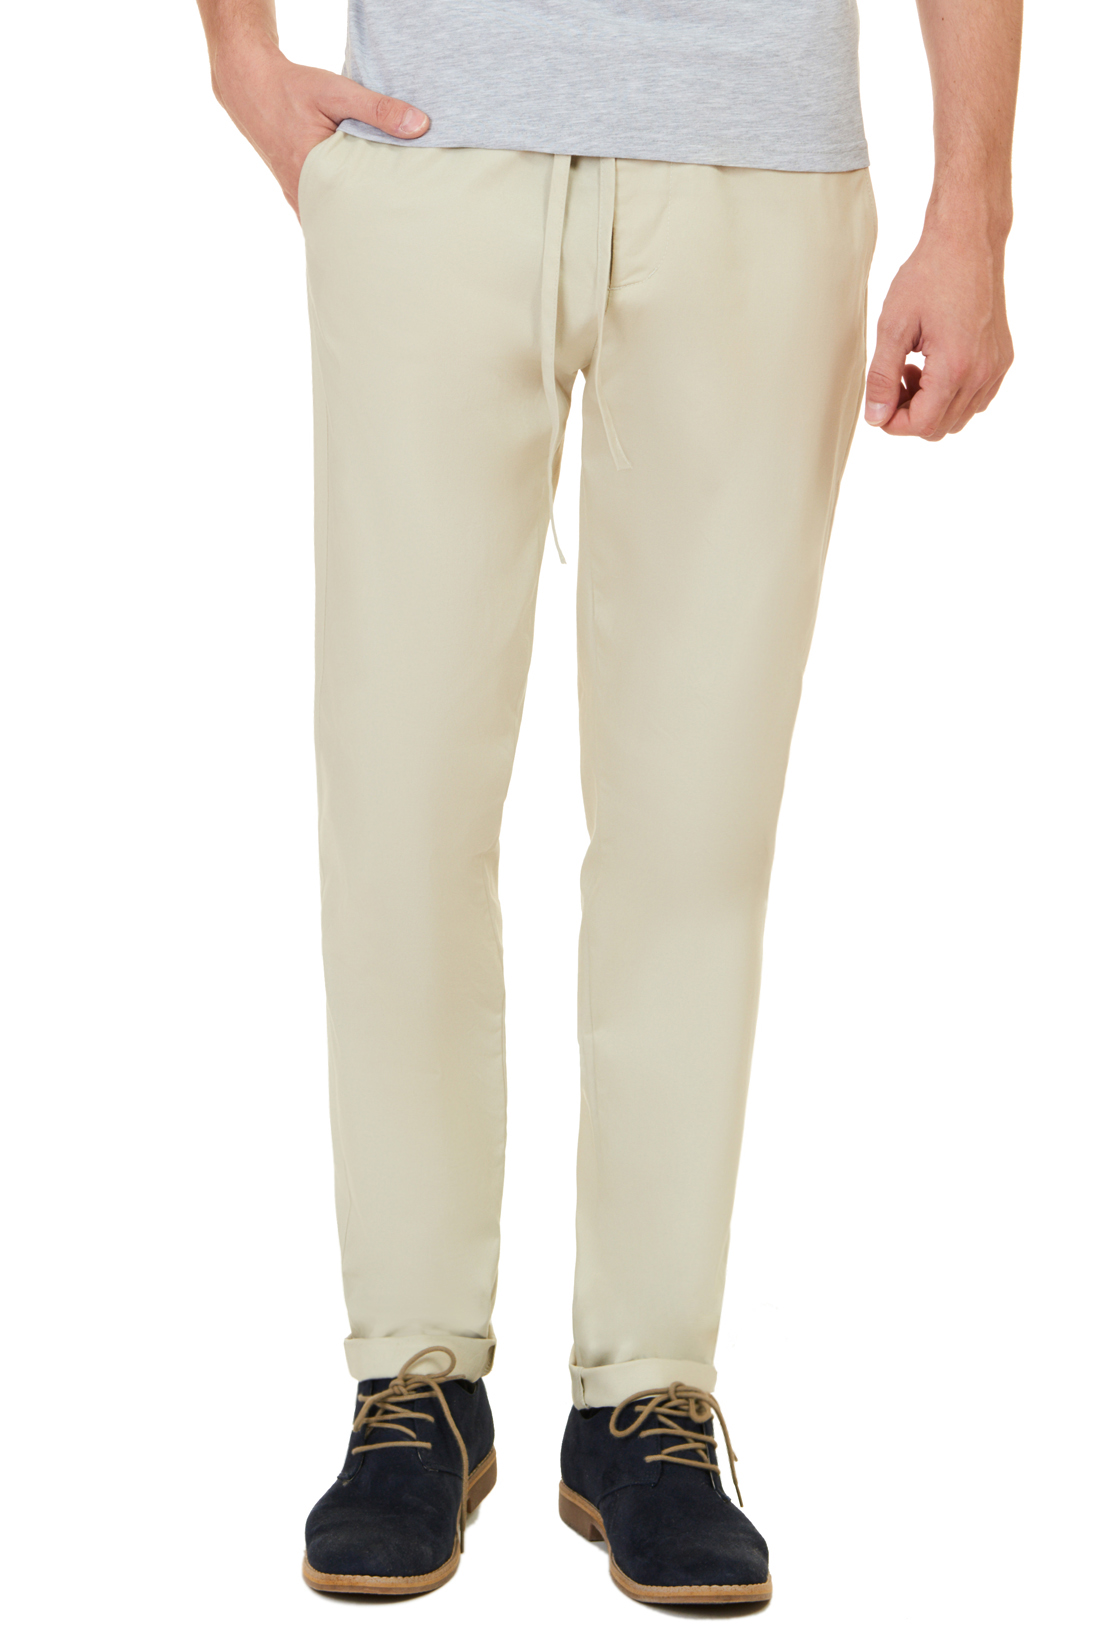 Летние брюки с кулиской (арт. baon B797023), размер L, цвет бежевый Летние брюки с кулиской (арт. baon B797023) - фото 1